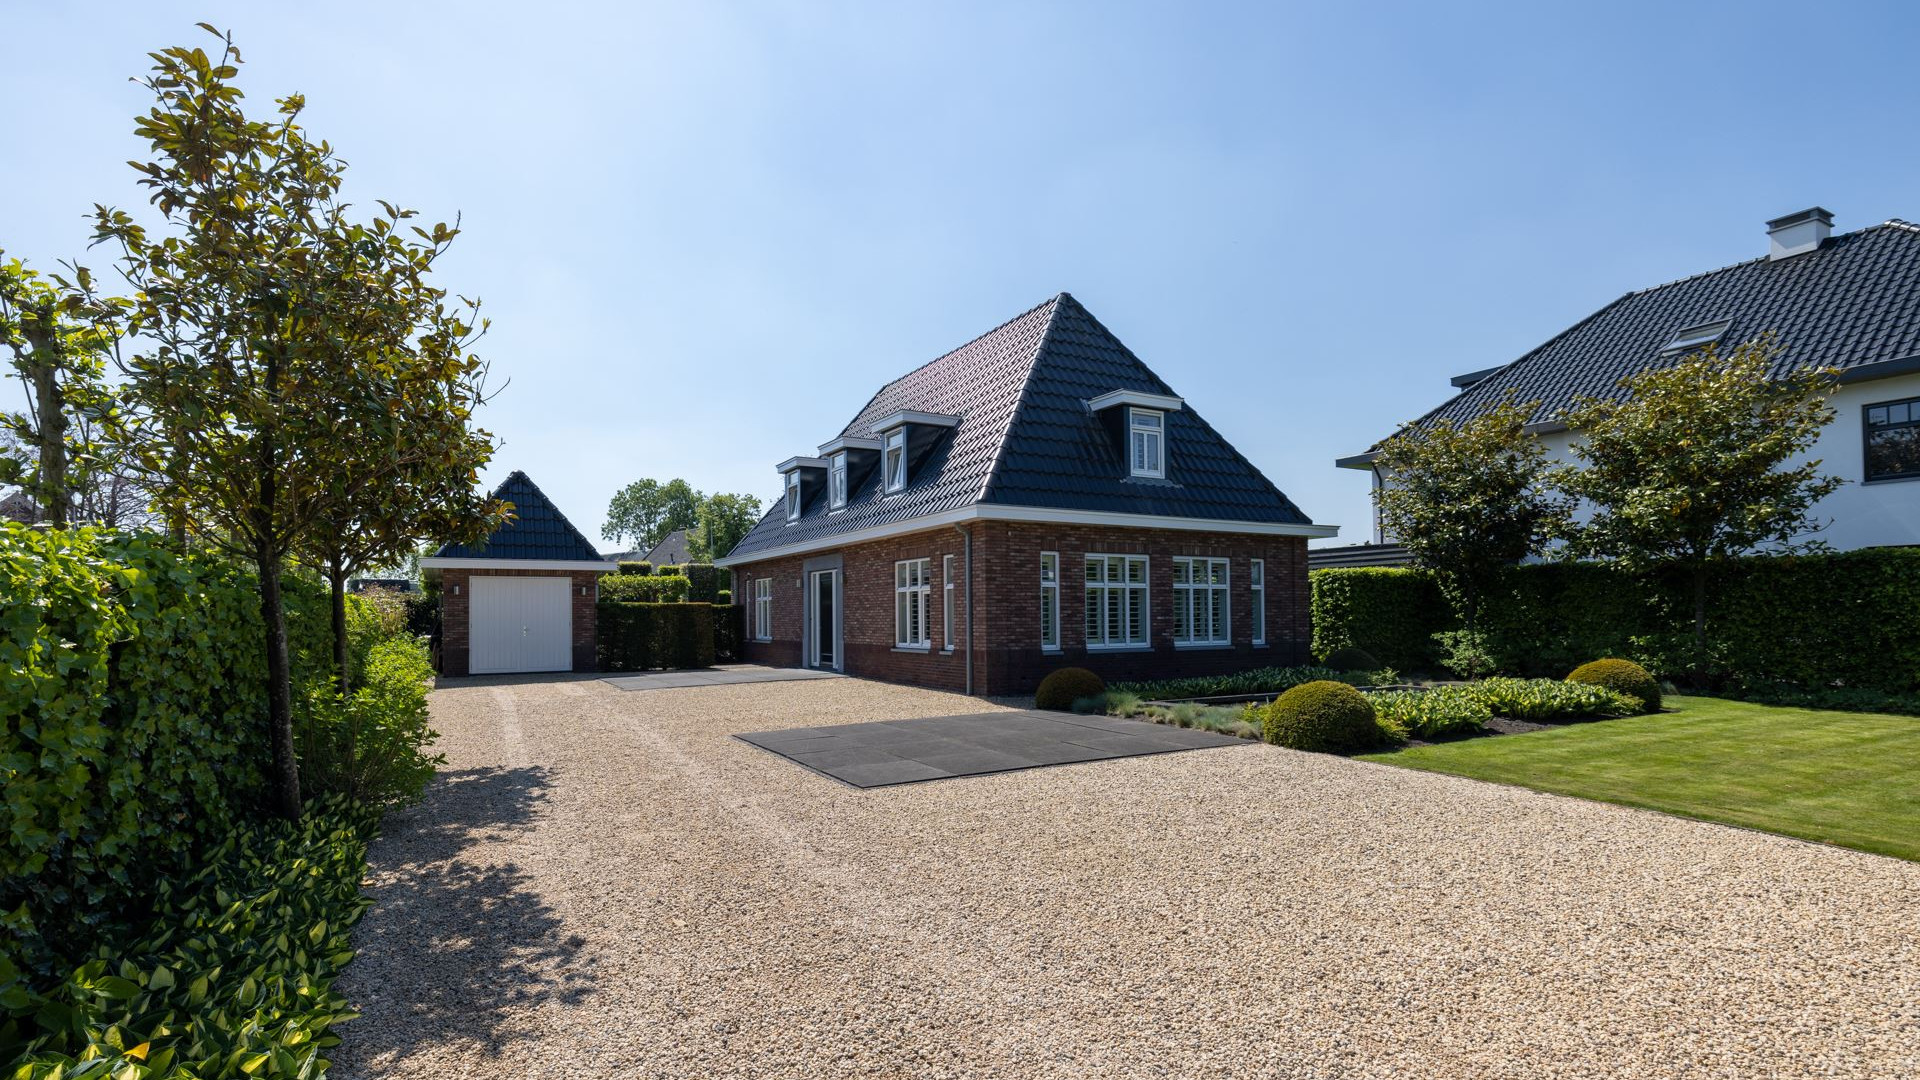 Keeper van Feijenoord koopt miljoenen villa in Berkel en Rodenrijs. Zie foto's 30